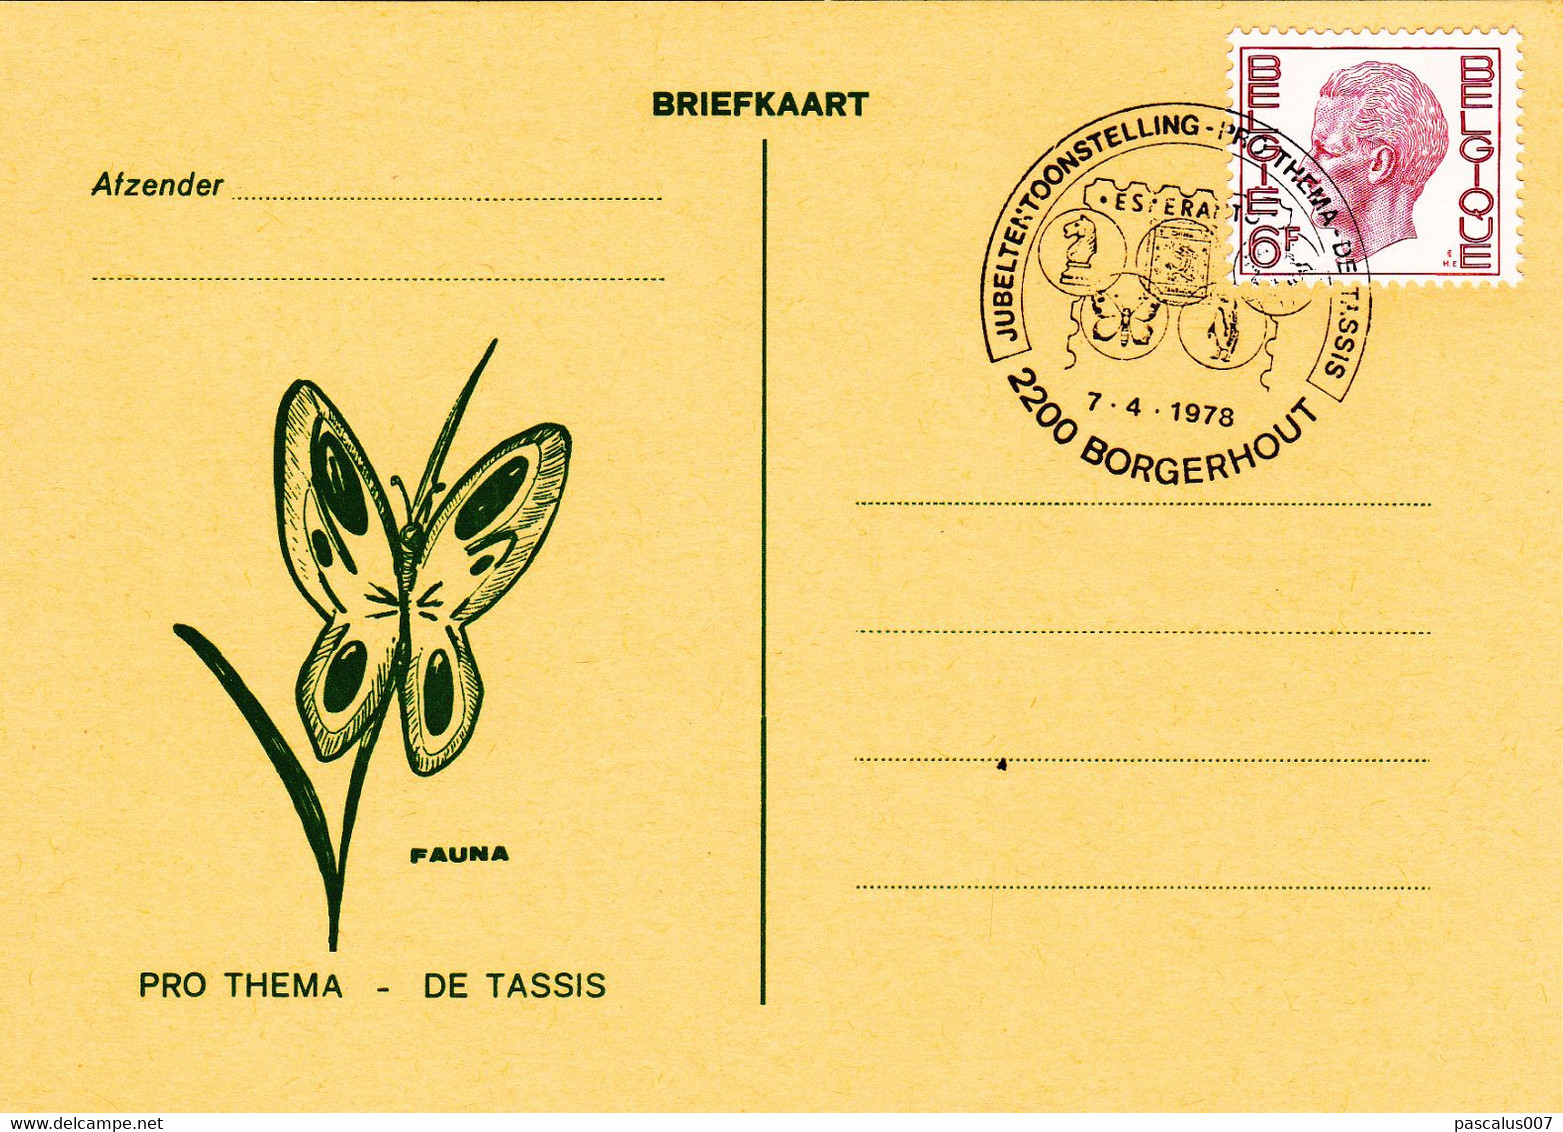 B01-396 6 Briefkaarten Met Stempel ESPERANTO - Pro Thema DE TASSIS - Jubeltentoonstelling 7-4-1978 2200 Borgerhout - Luchtpostbladen